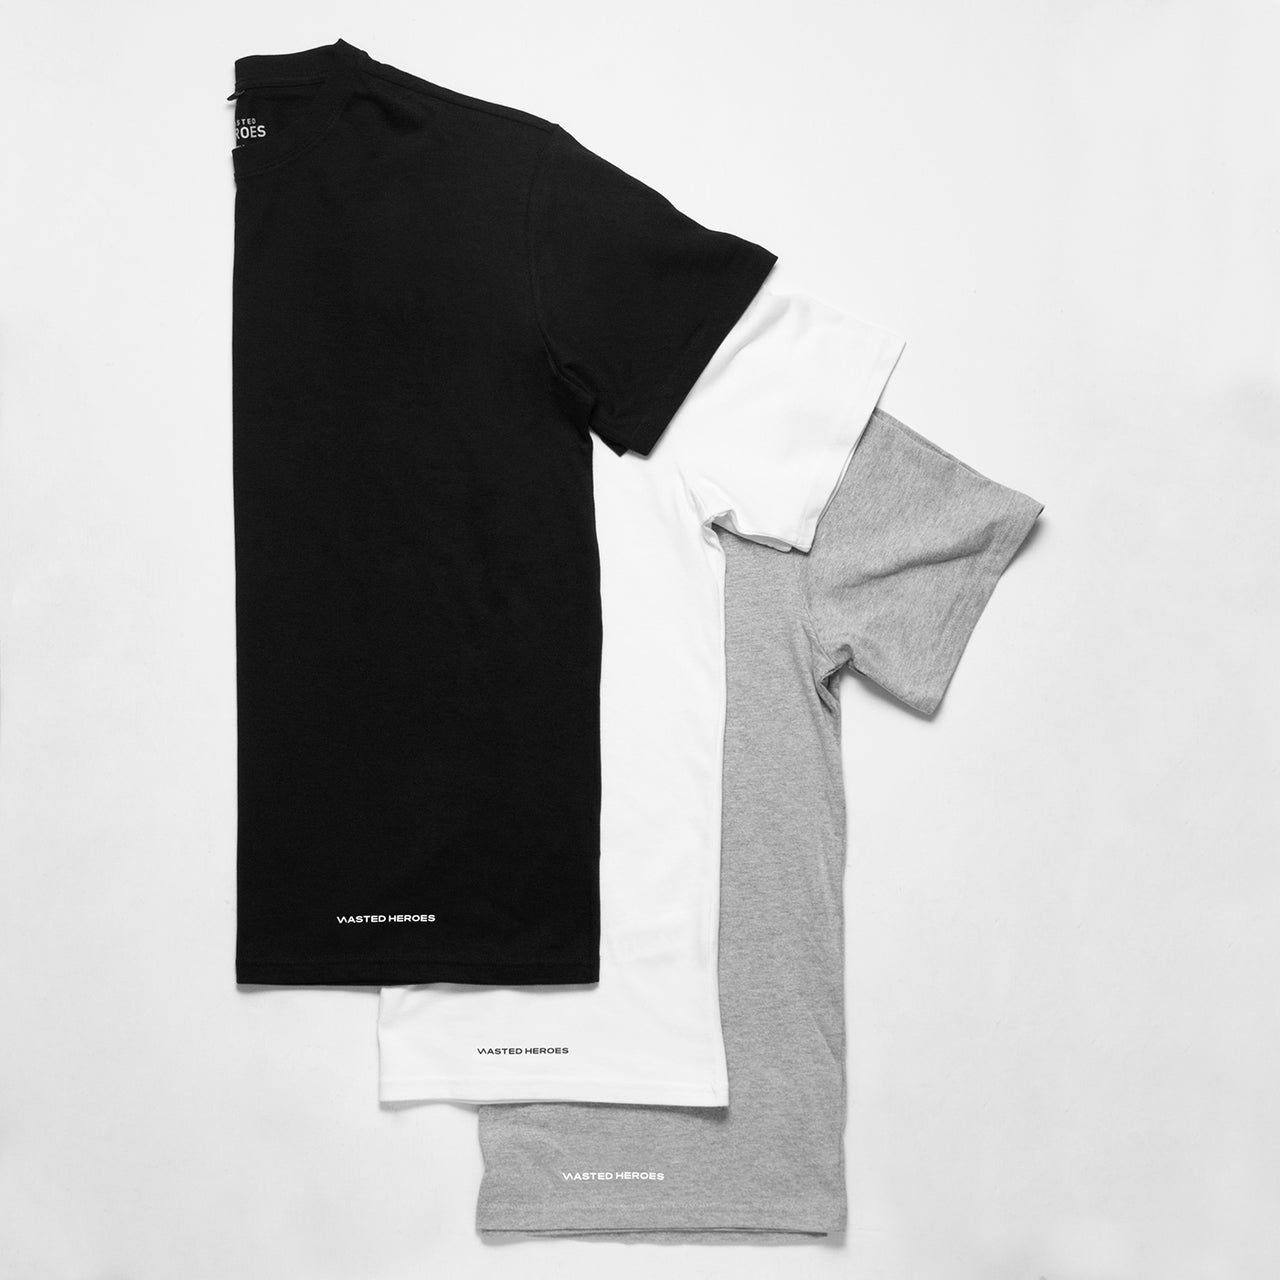 Wasted Heroes Logo - Oversized Tshirt - Black/Grey/White